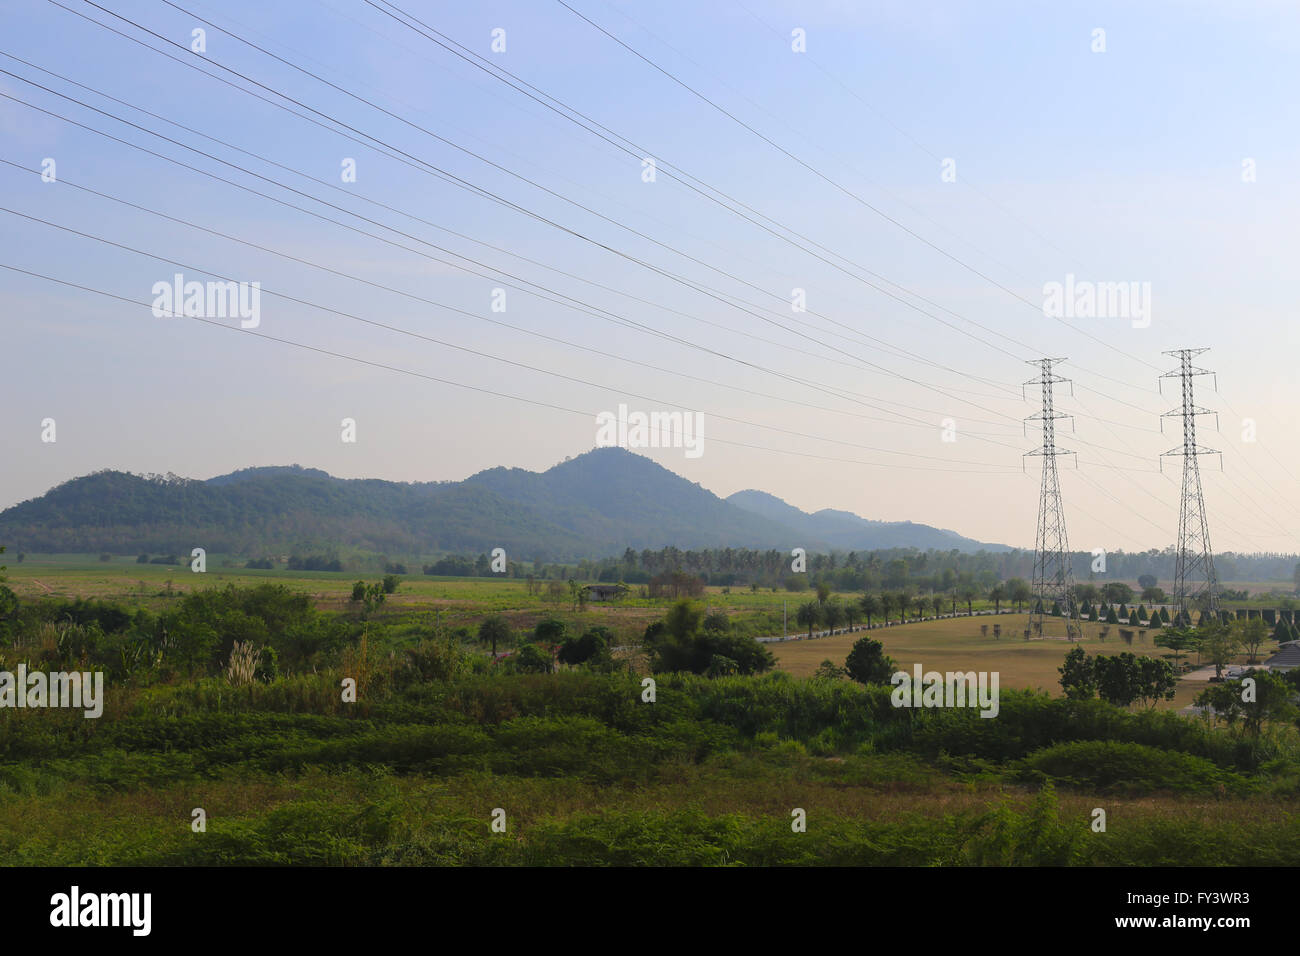 Natürliche Landschaft und Hochspannung Pole in ländlichen Gebieten des Thailand. Stockfoto